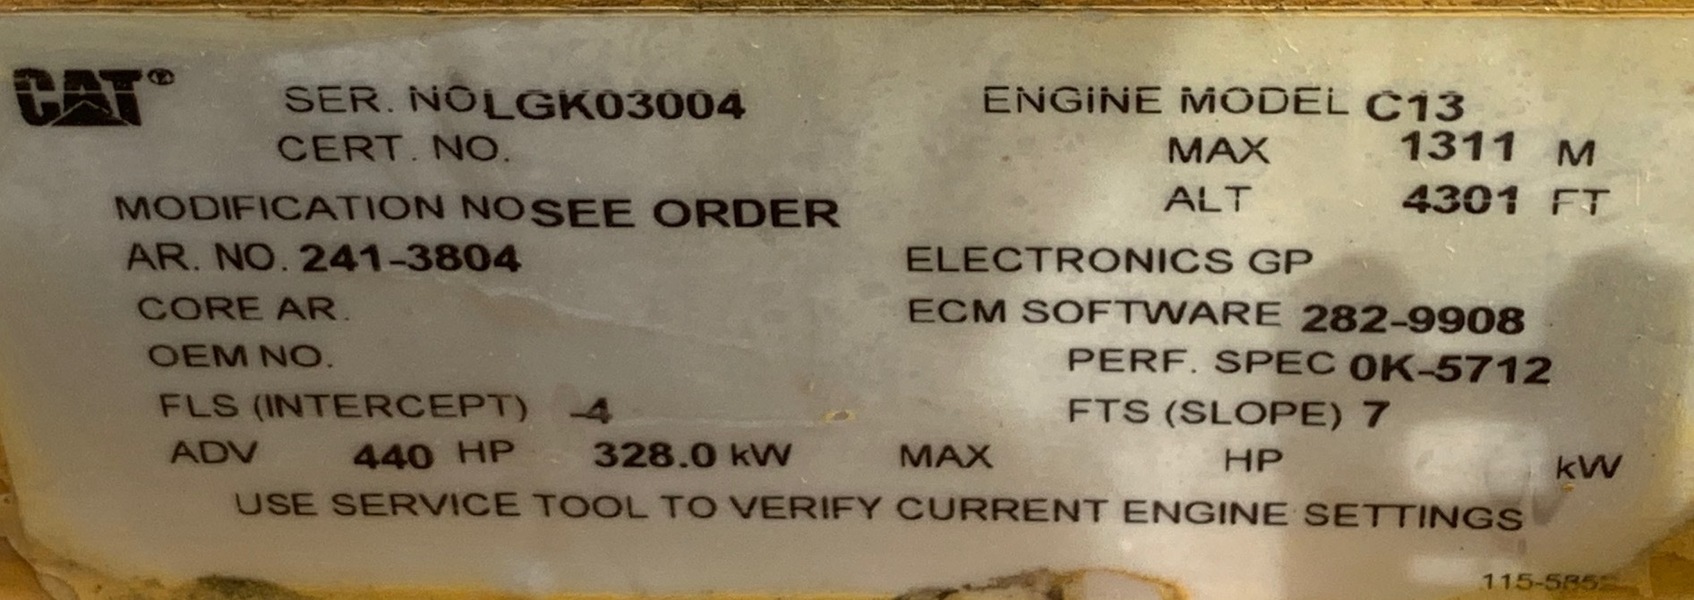 cat c13 engine serial number location